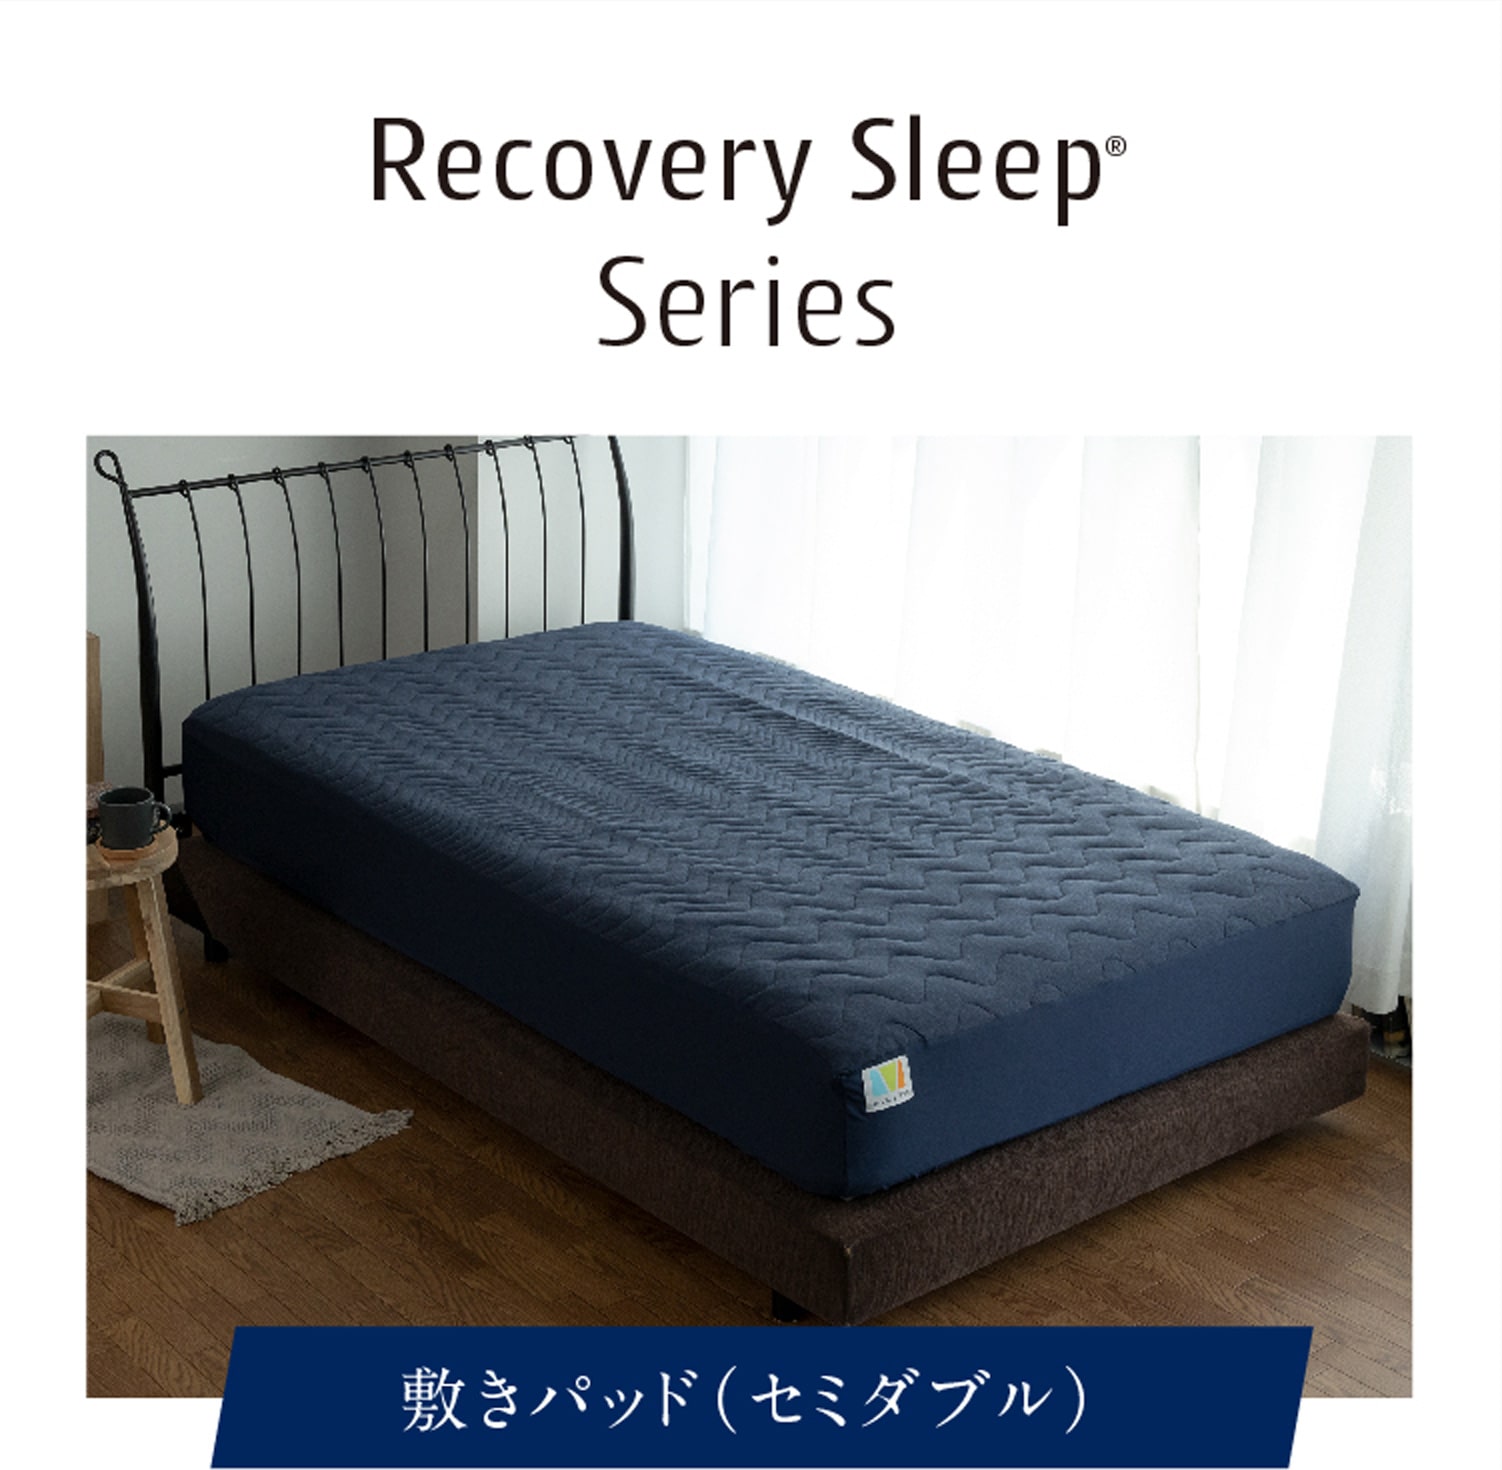 Recovery Sleep Series